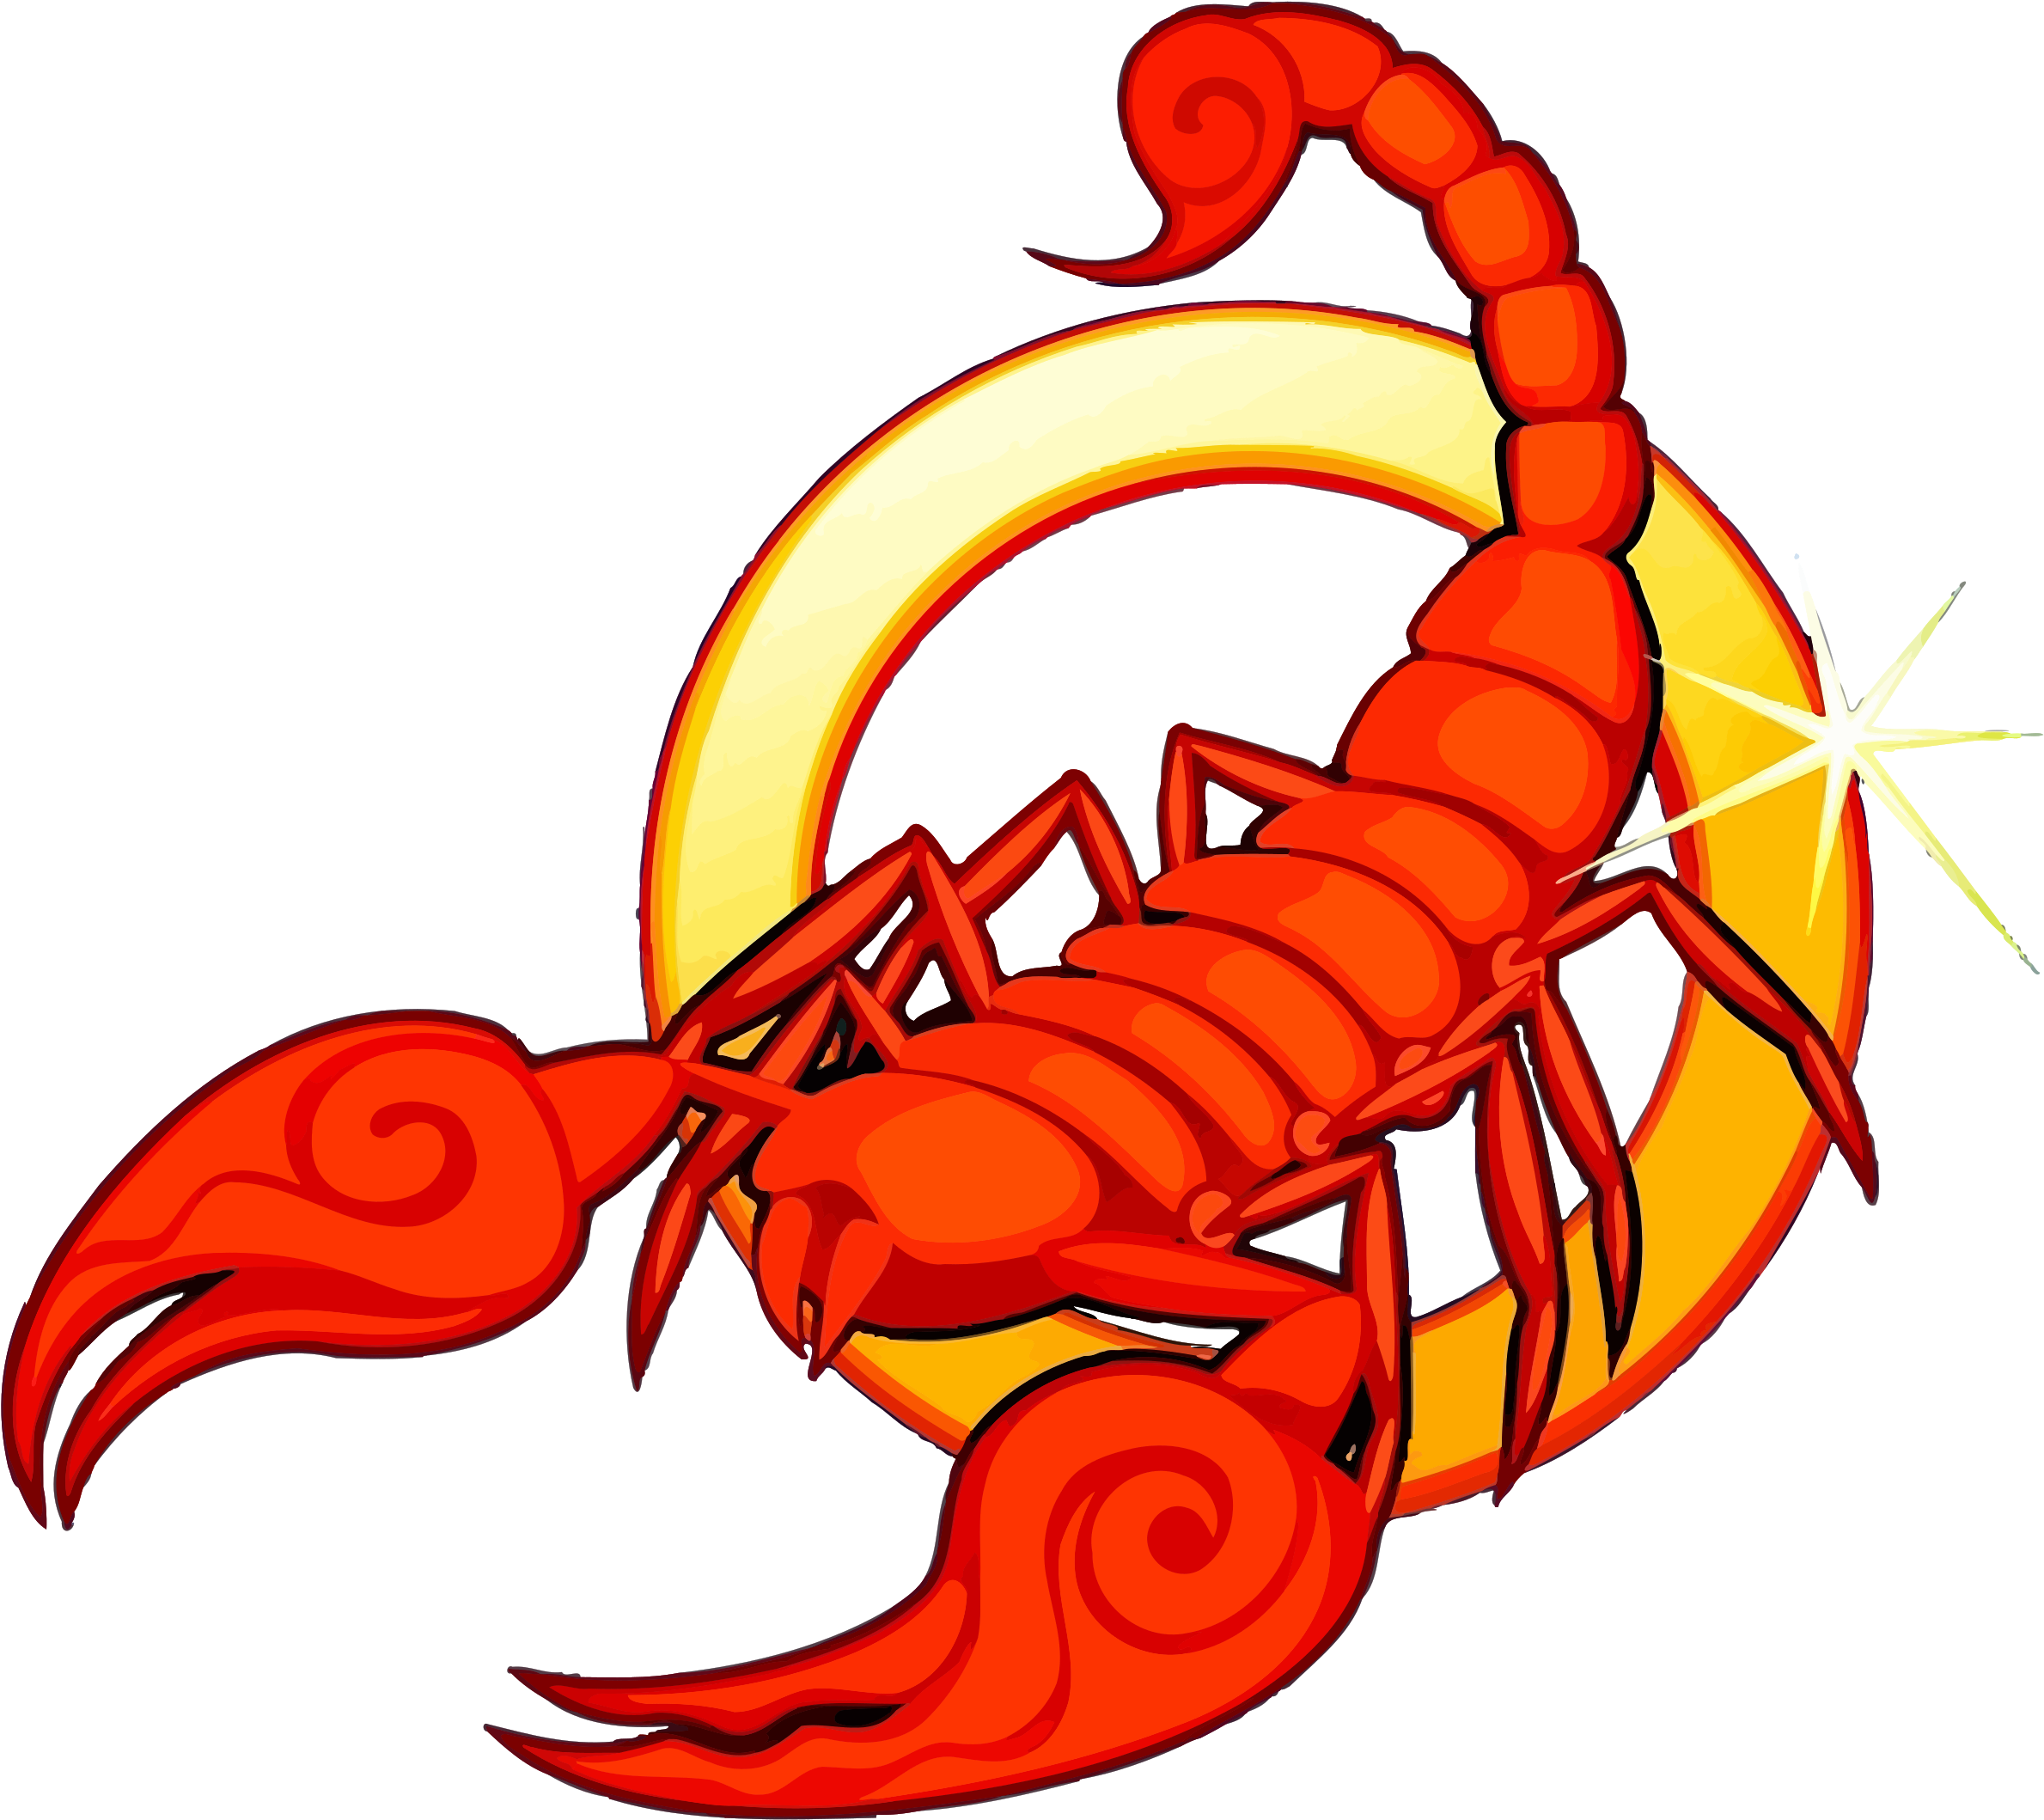 2 - Zodiac Astrological Sign Scorpio Scorpion 10/23 (2400x2135)